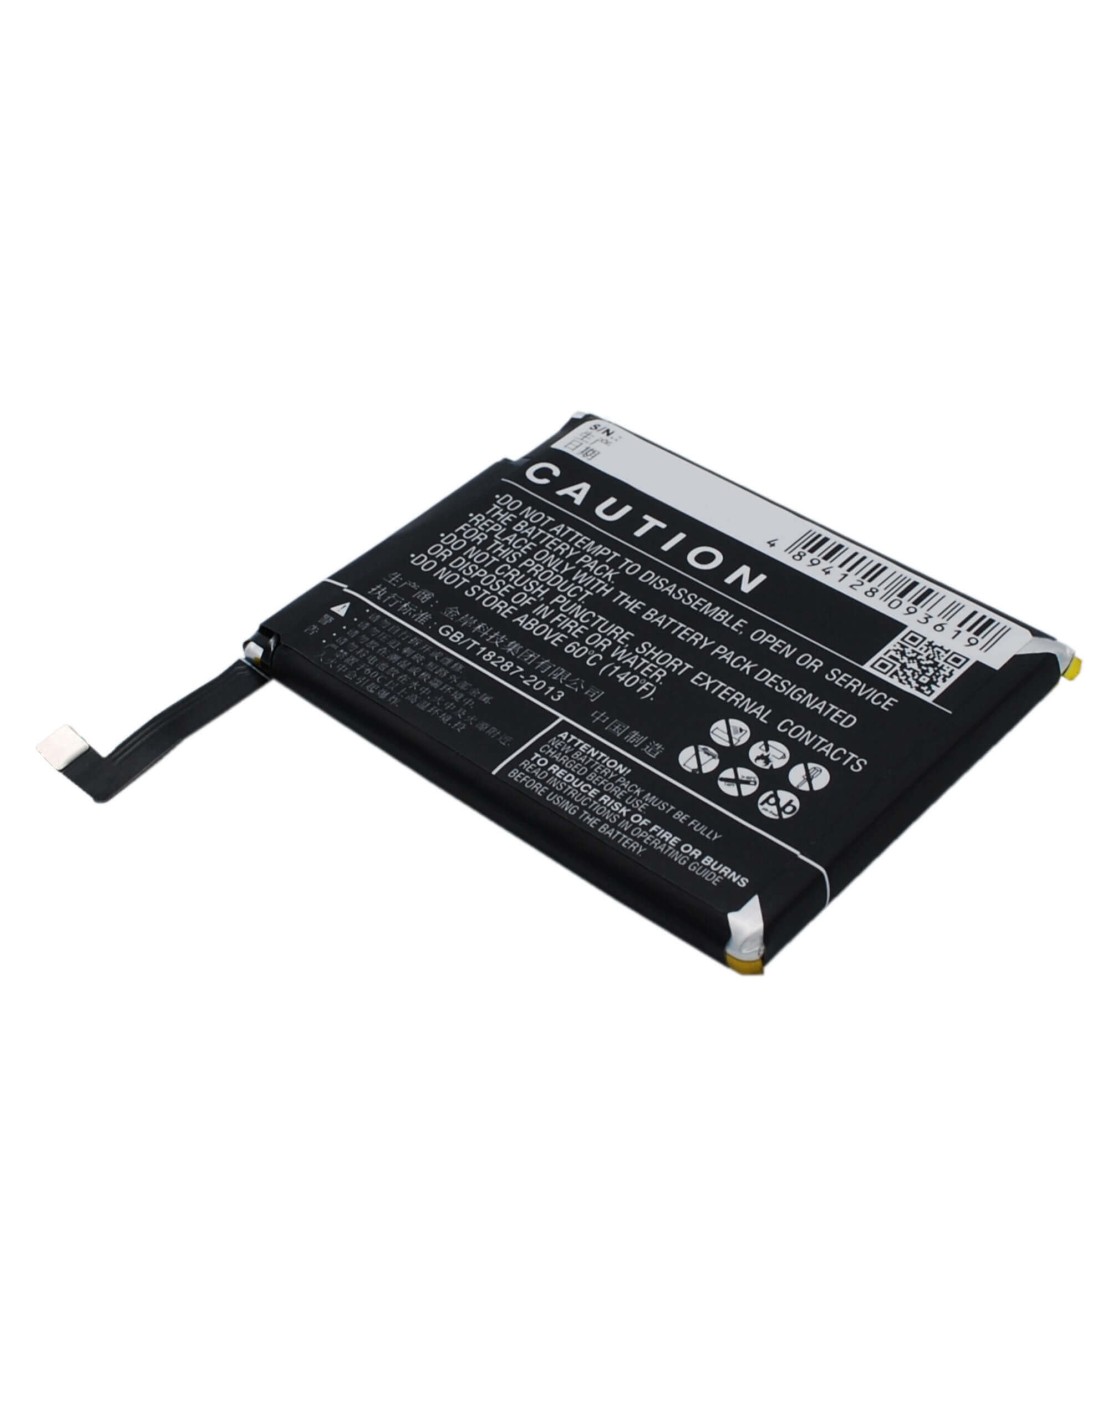 Battery for MeiZu MX4 3.8V, 3100mAh - 11.78Wh